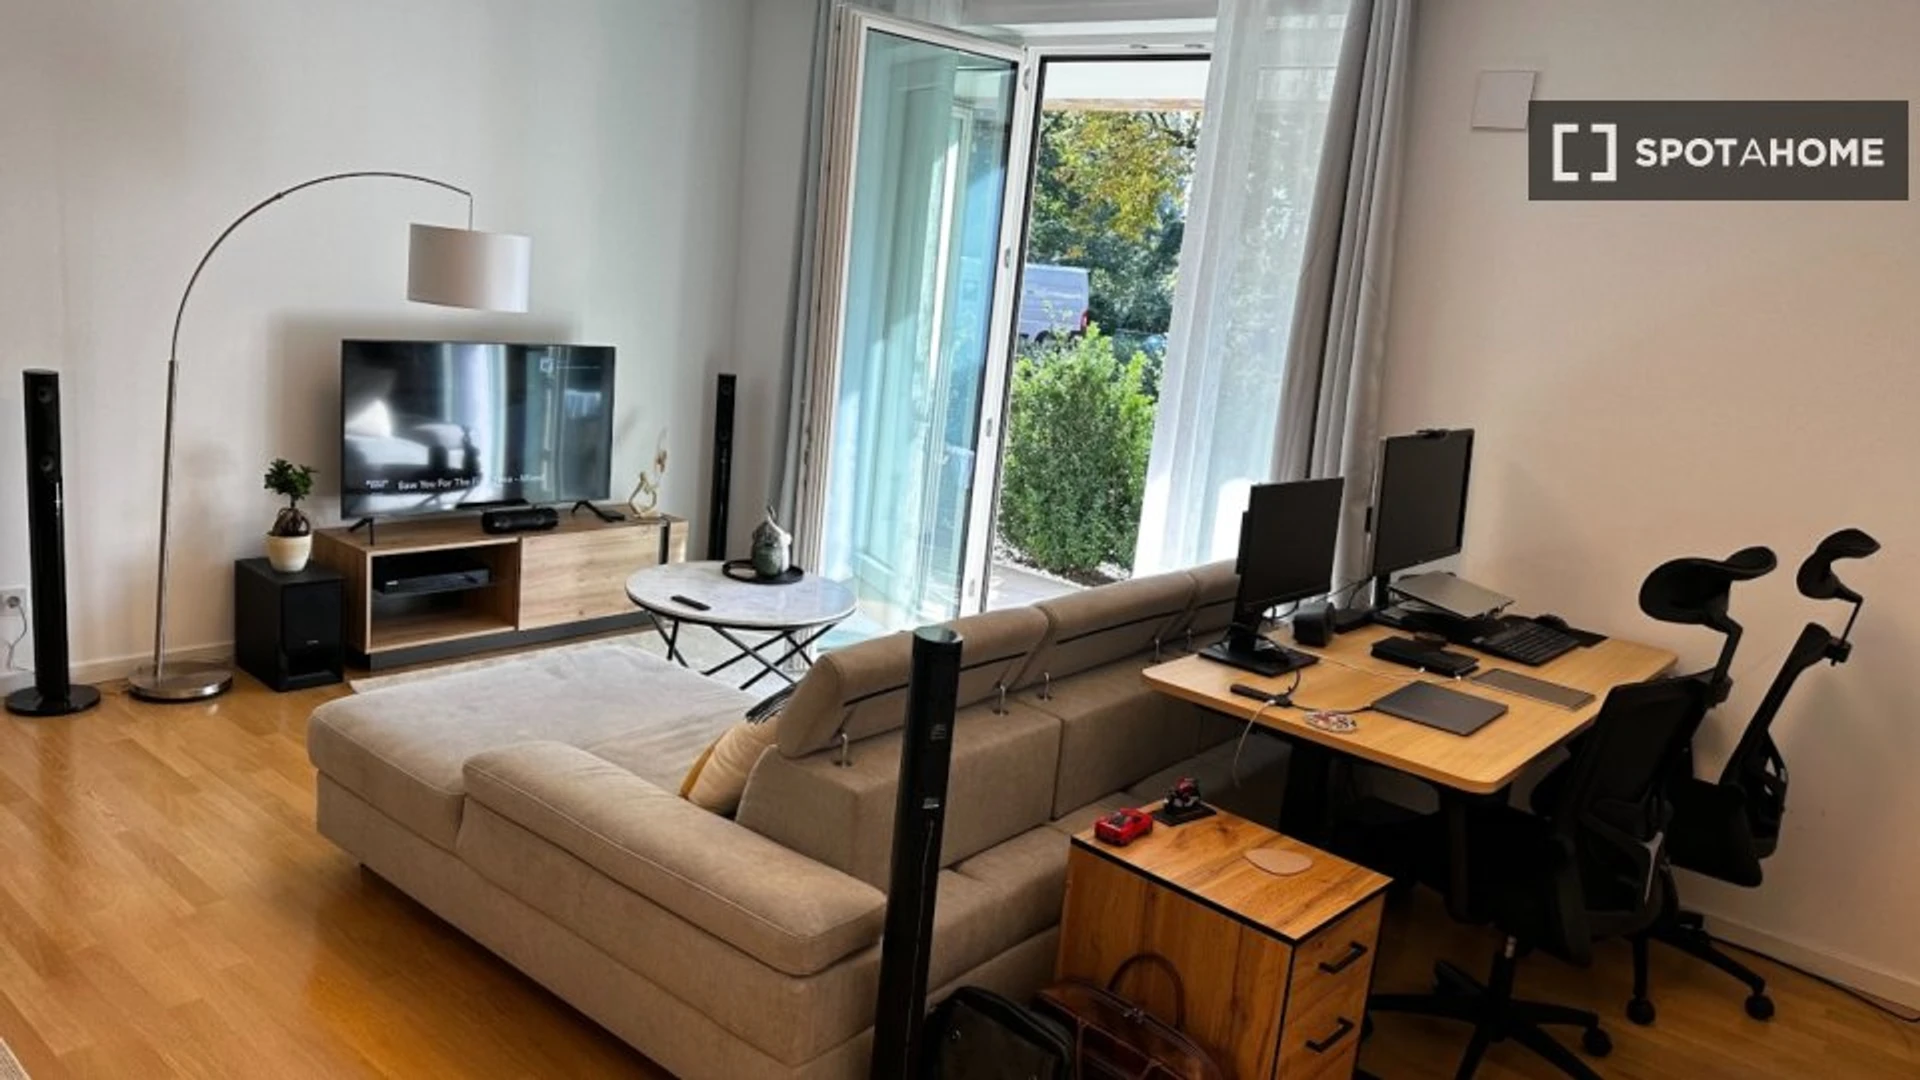 Apartamento totalmente mobilado em Hamburgo